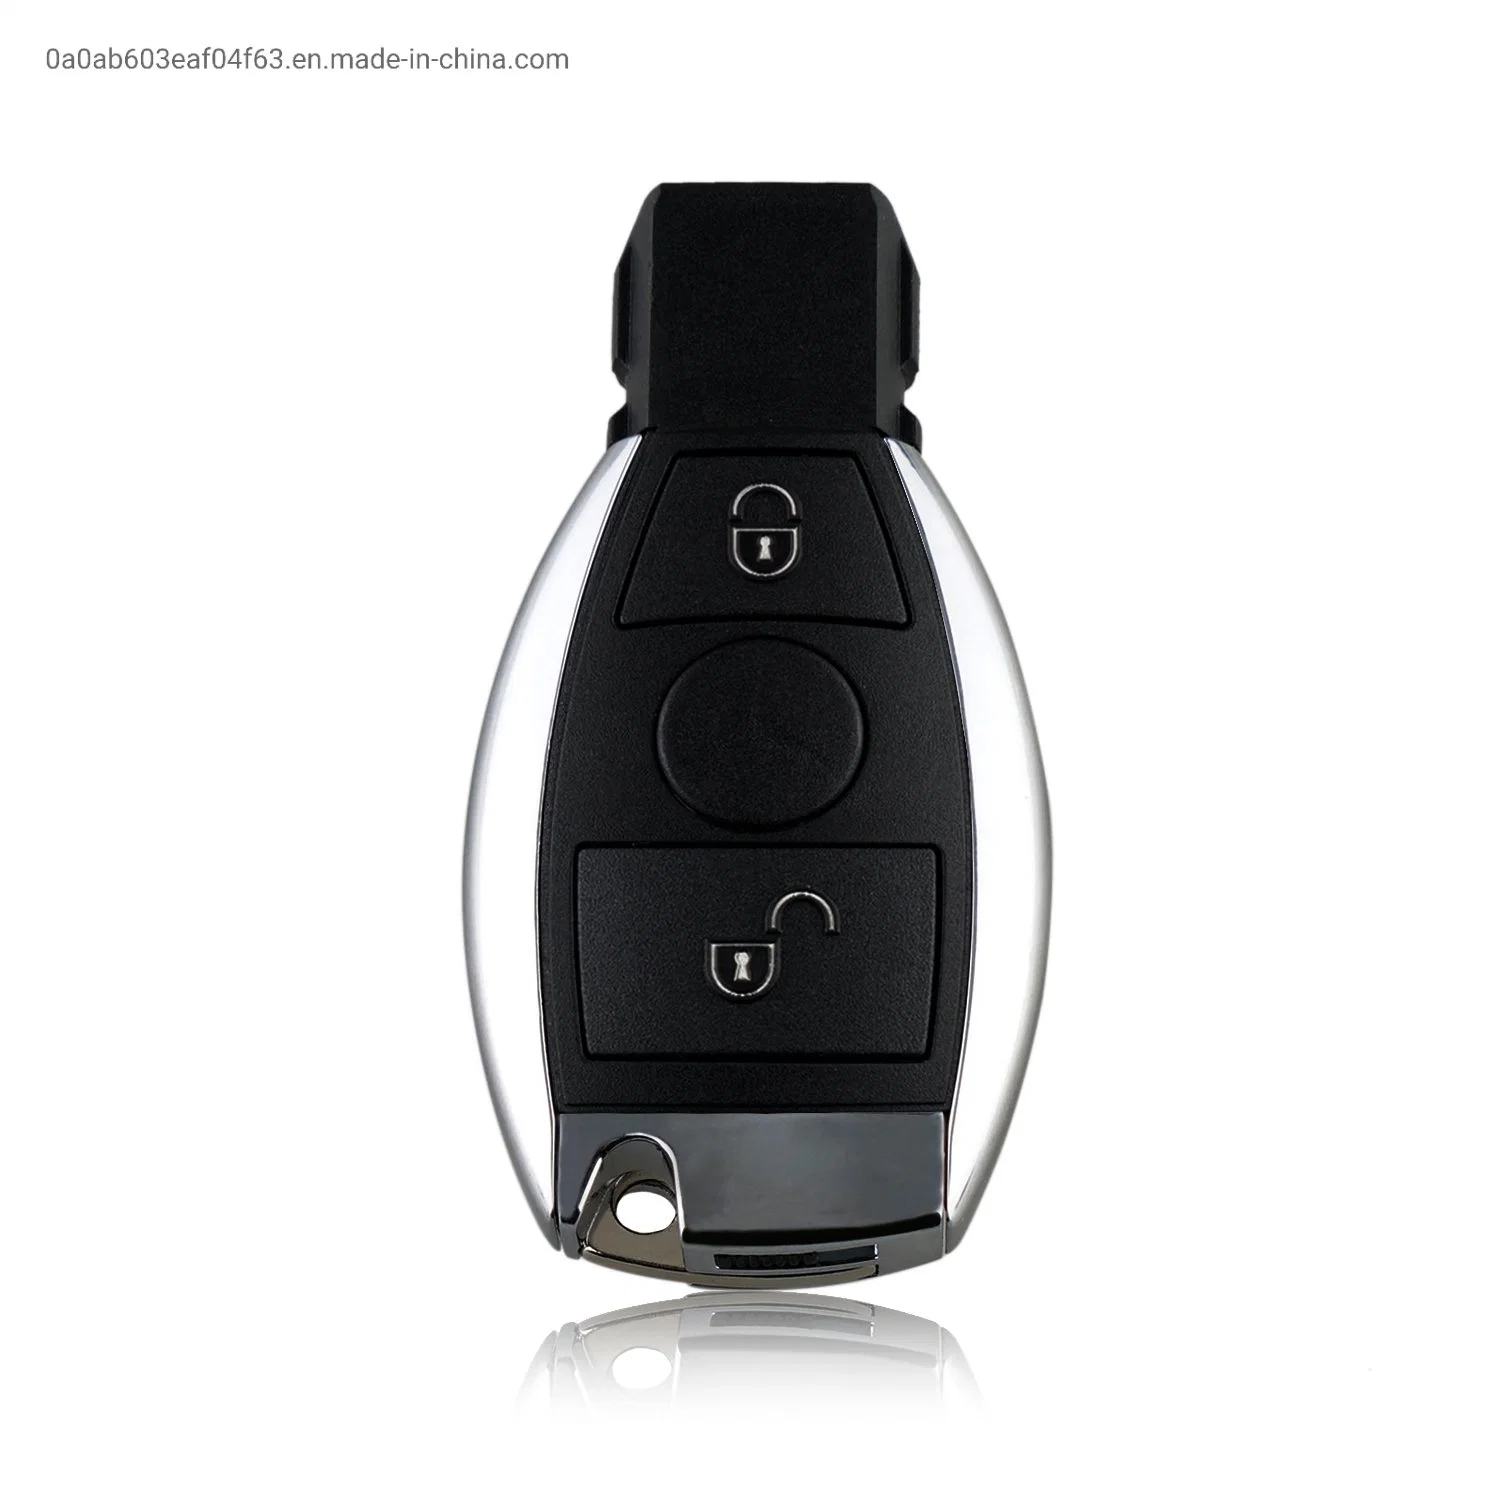 2 Buttons 433 MHZ BGA & NEC Auto Fob Remote Smart Car Key For Mercedes Benz C300 C350 CL500 CL600 CLS CLK GL ML SL